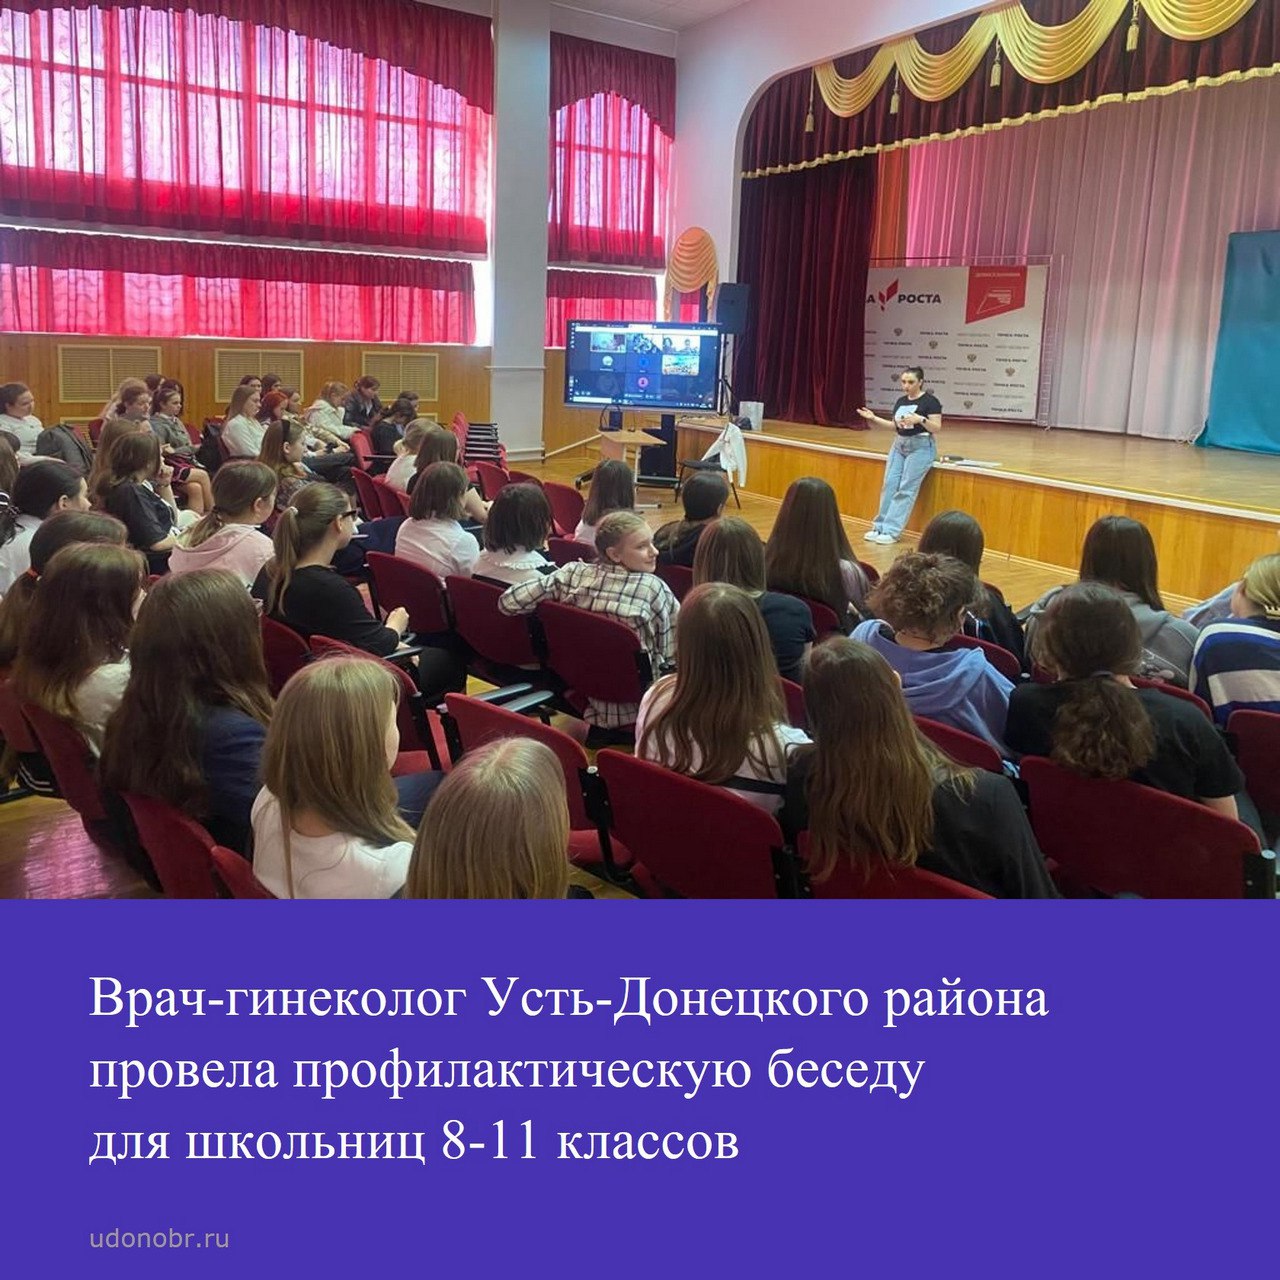 Врач-гинеколог Усть-Донецкого района провела профилактическую беседу для школьниц 8-11 классов